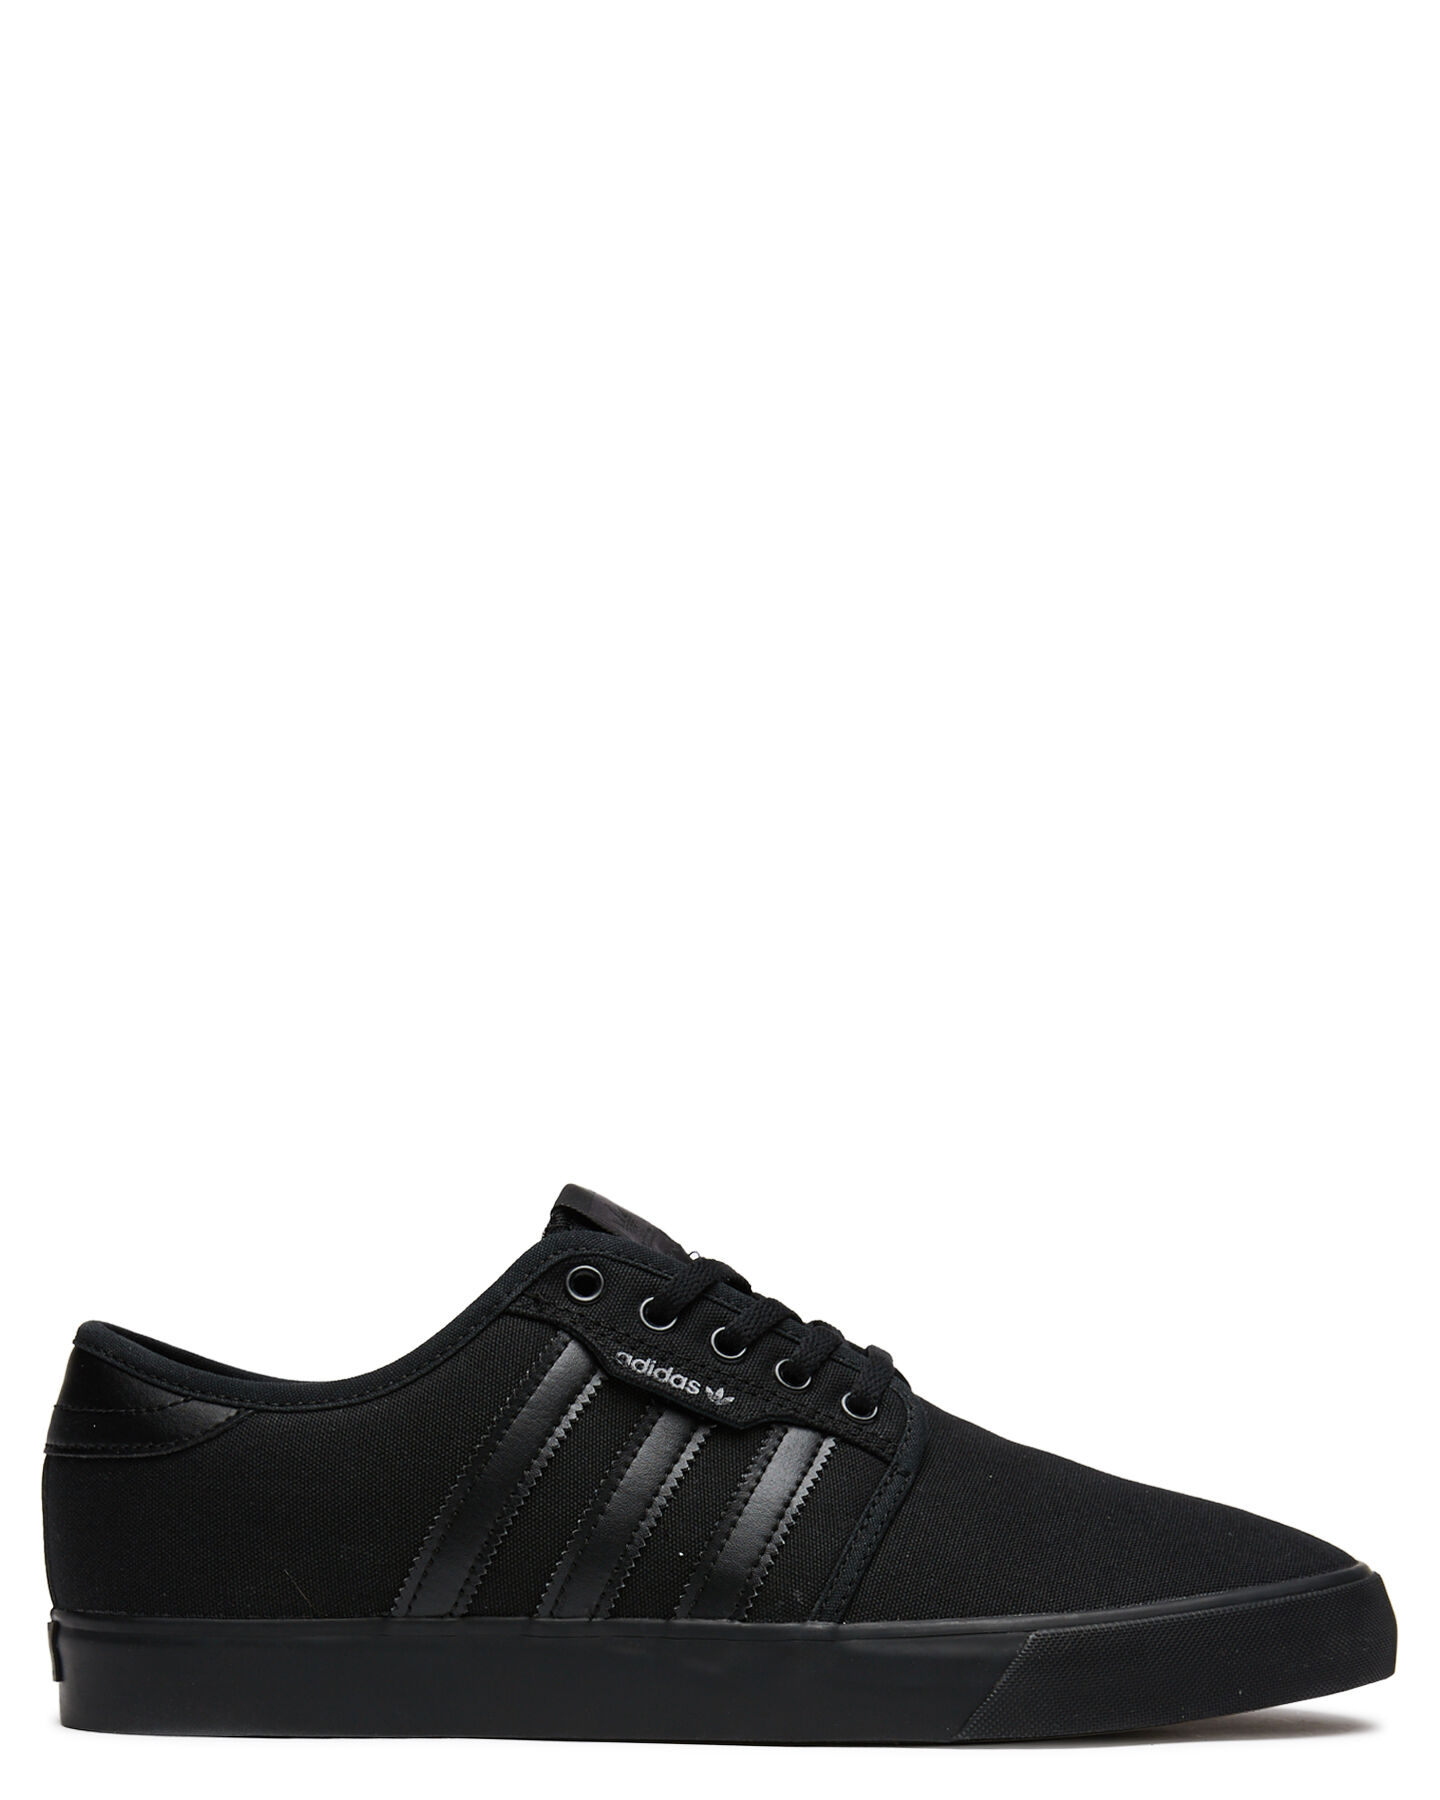 black on black adidas shoes womens